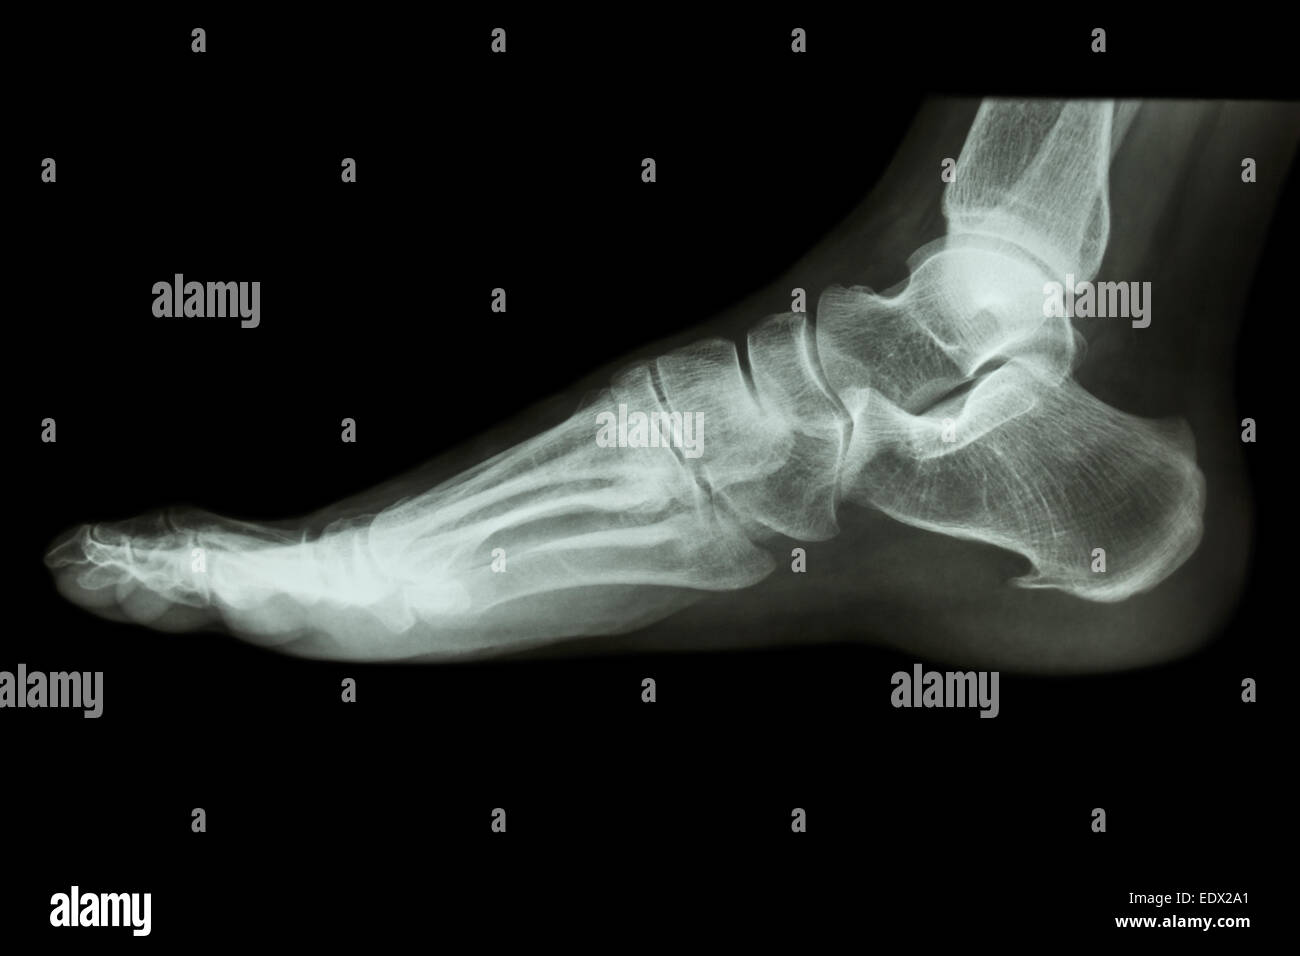 Radiografía lateral del pie humano normal Foto de stock